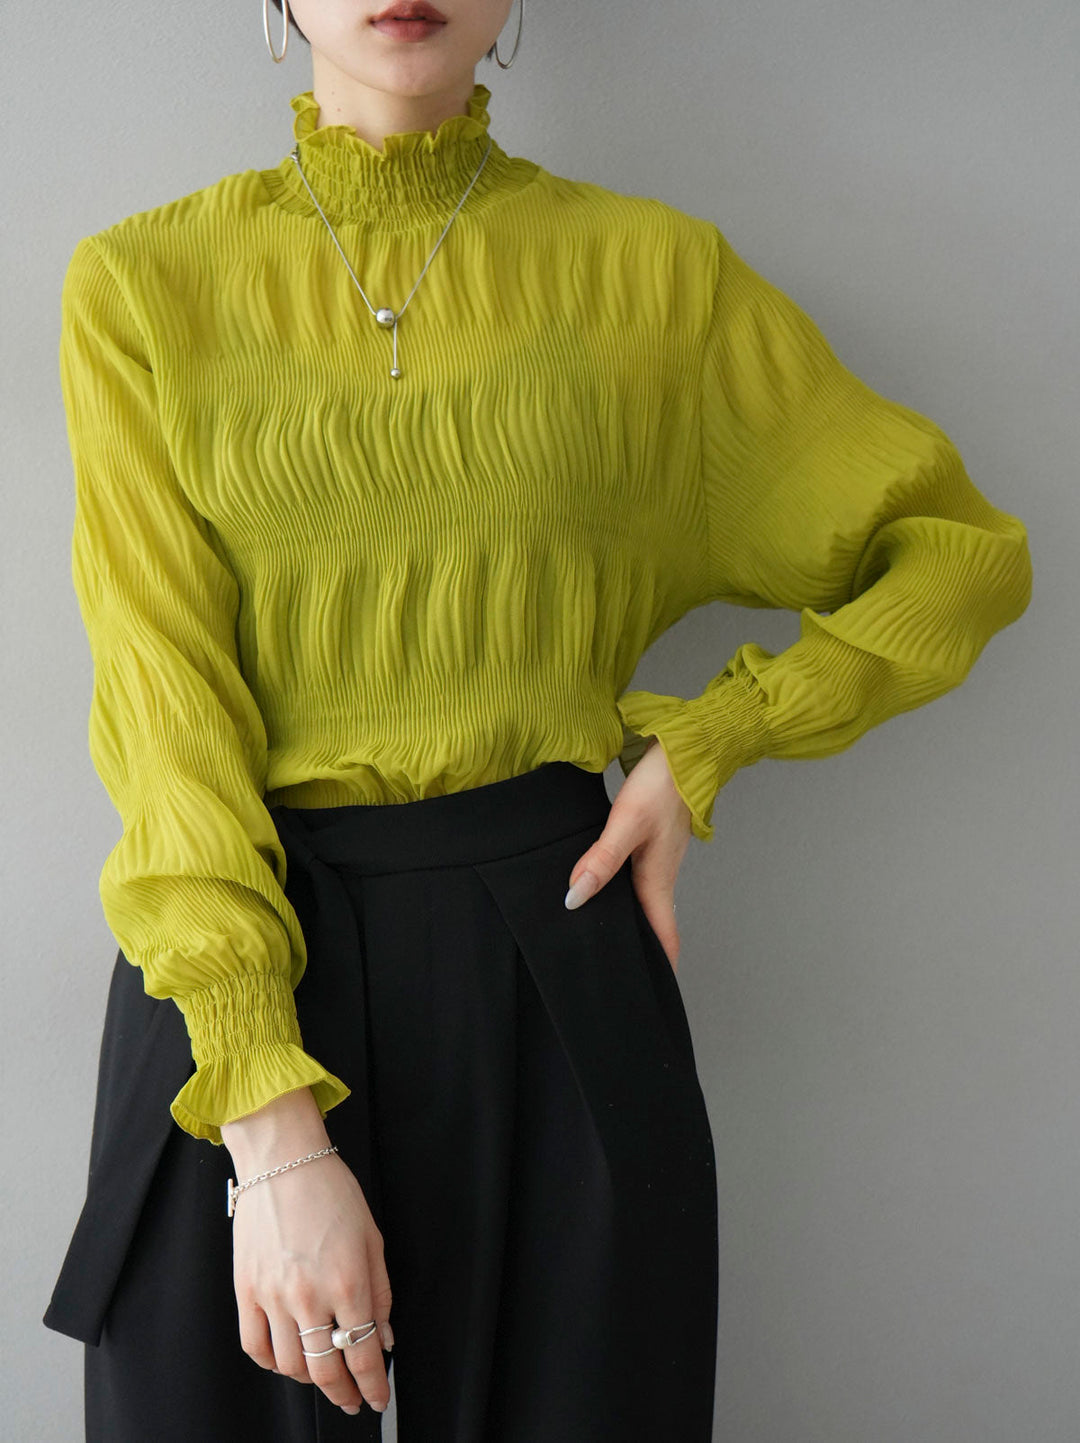 [SET] Shirring chiffon blouse + shirring chiffon blouse (2set)